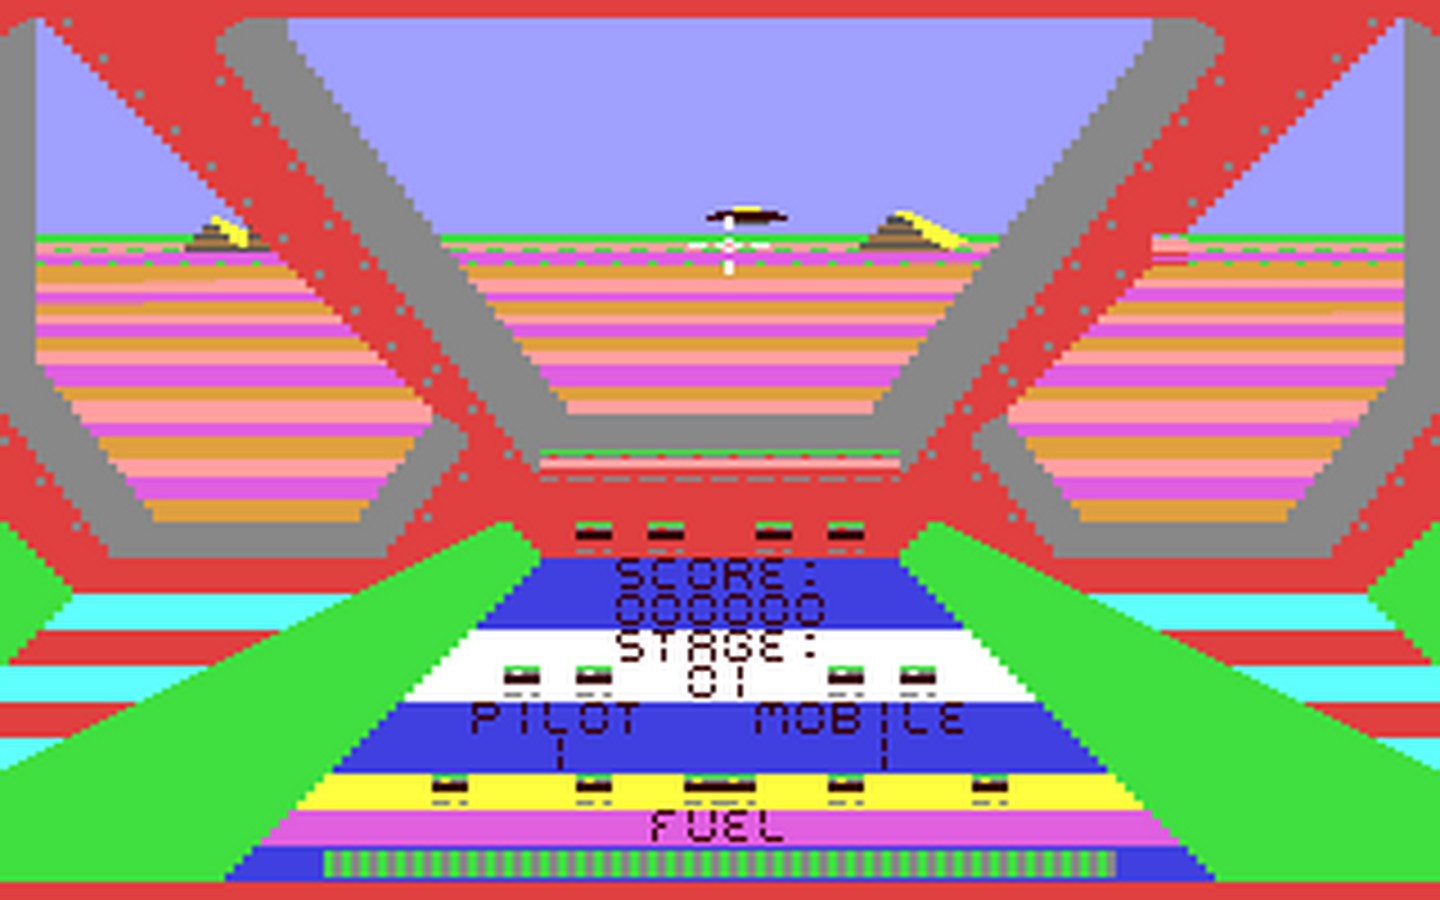 C64 GameBase UFO Tronic_Verlag_GmbH/Homecomputer 1985